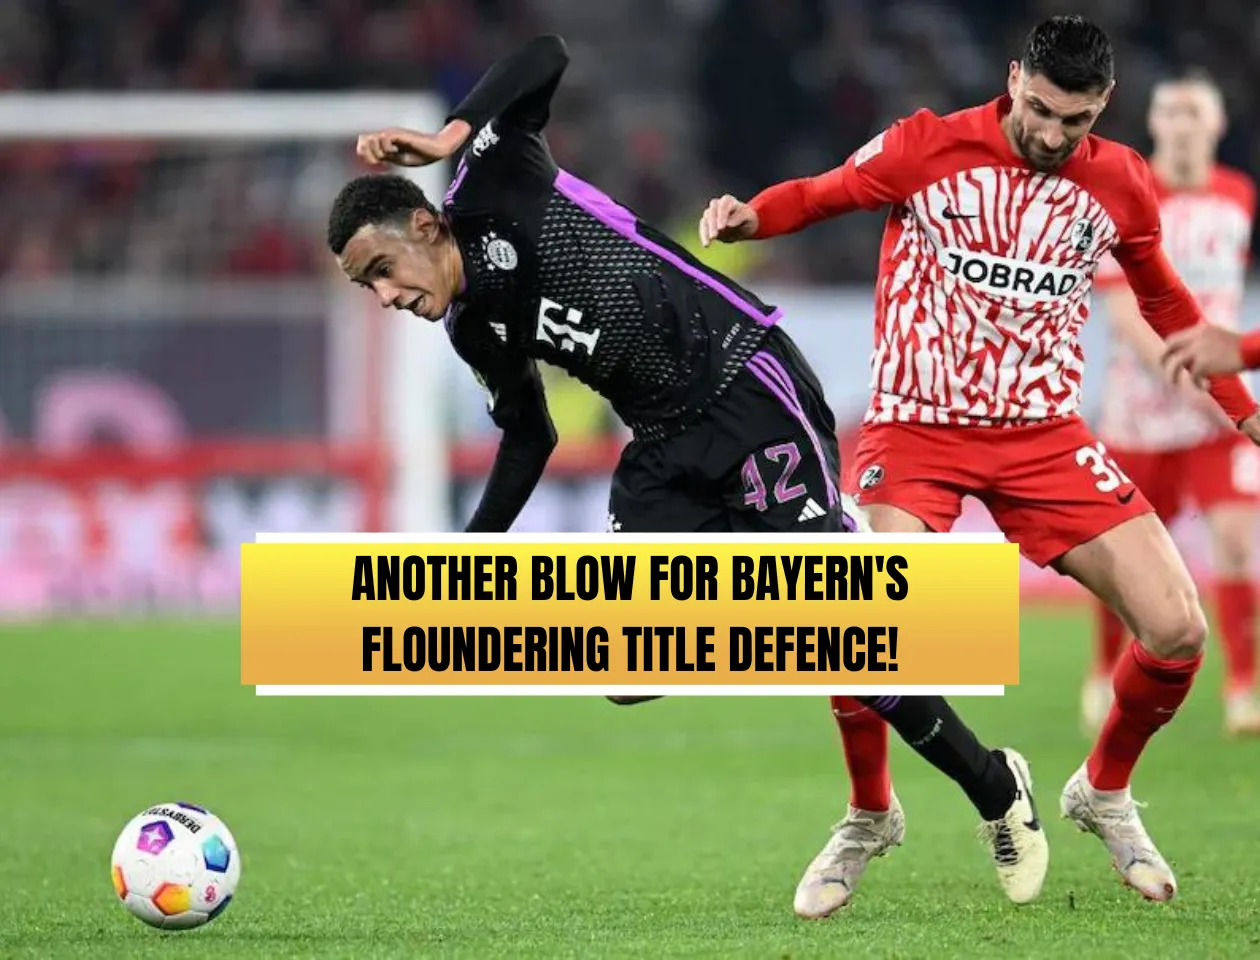 Bayer Leverkusen's maiden Bundesliga title hopes get big boost as Bayern Munich held to 2-2 draw at Freiburg